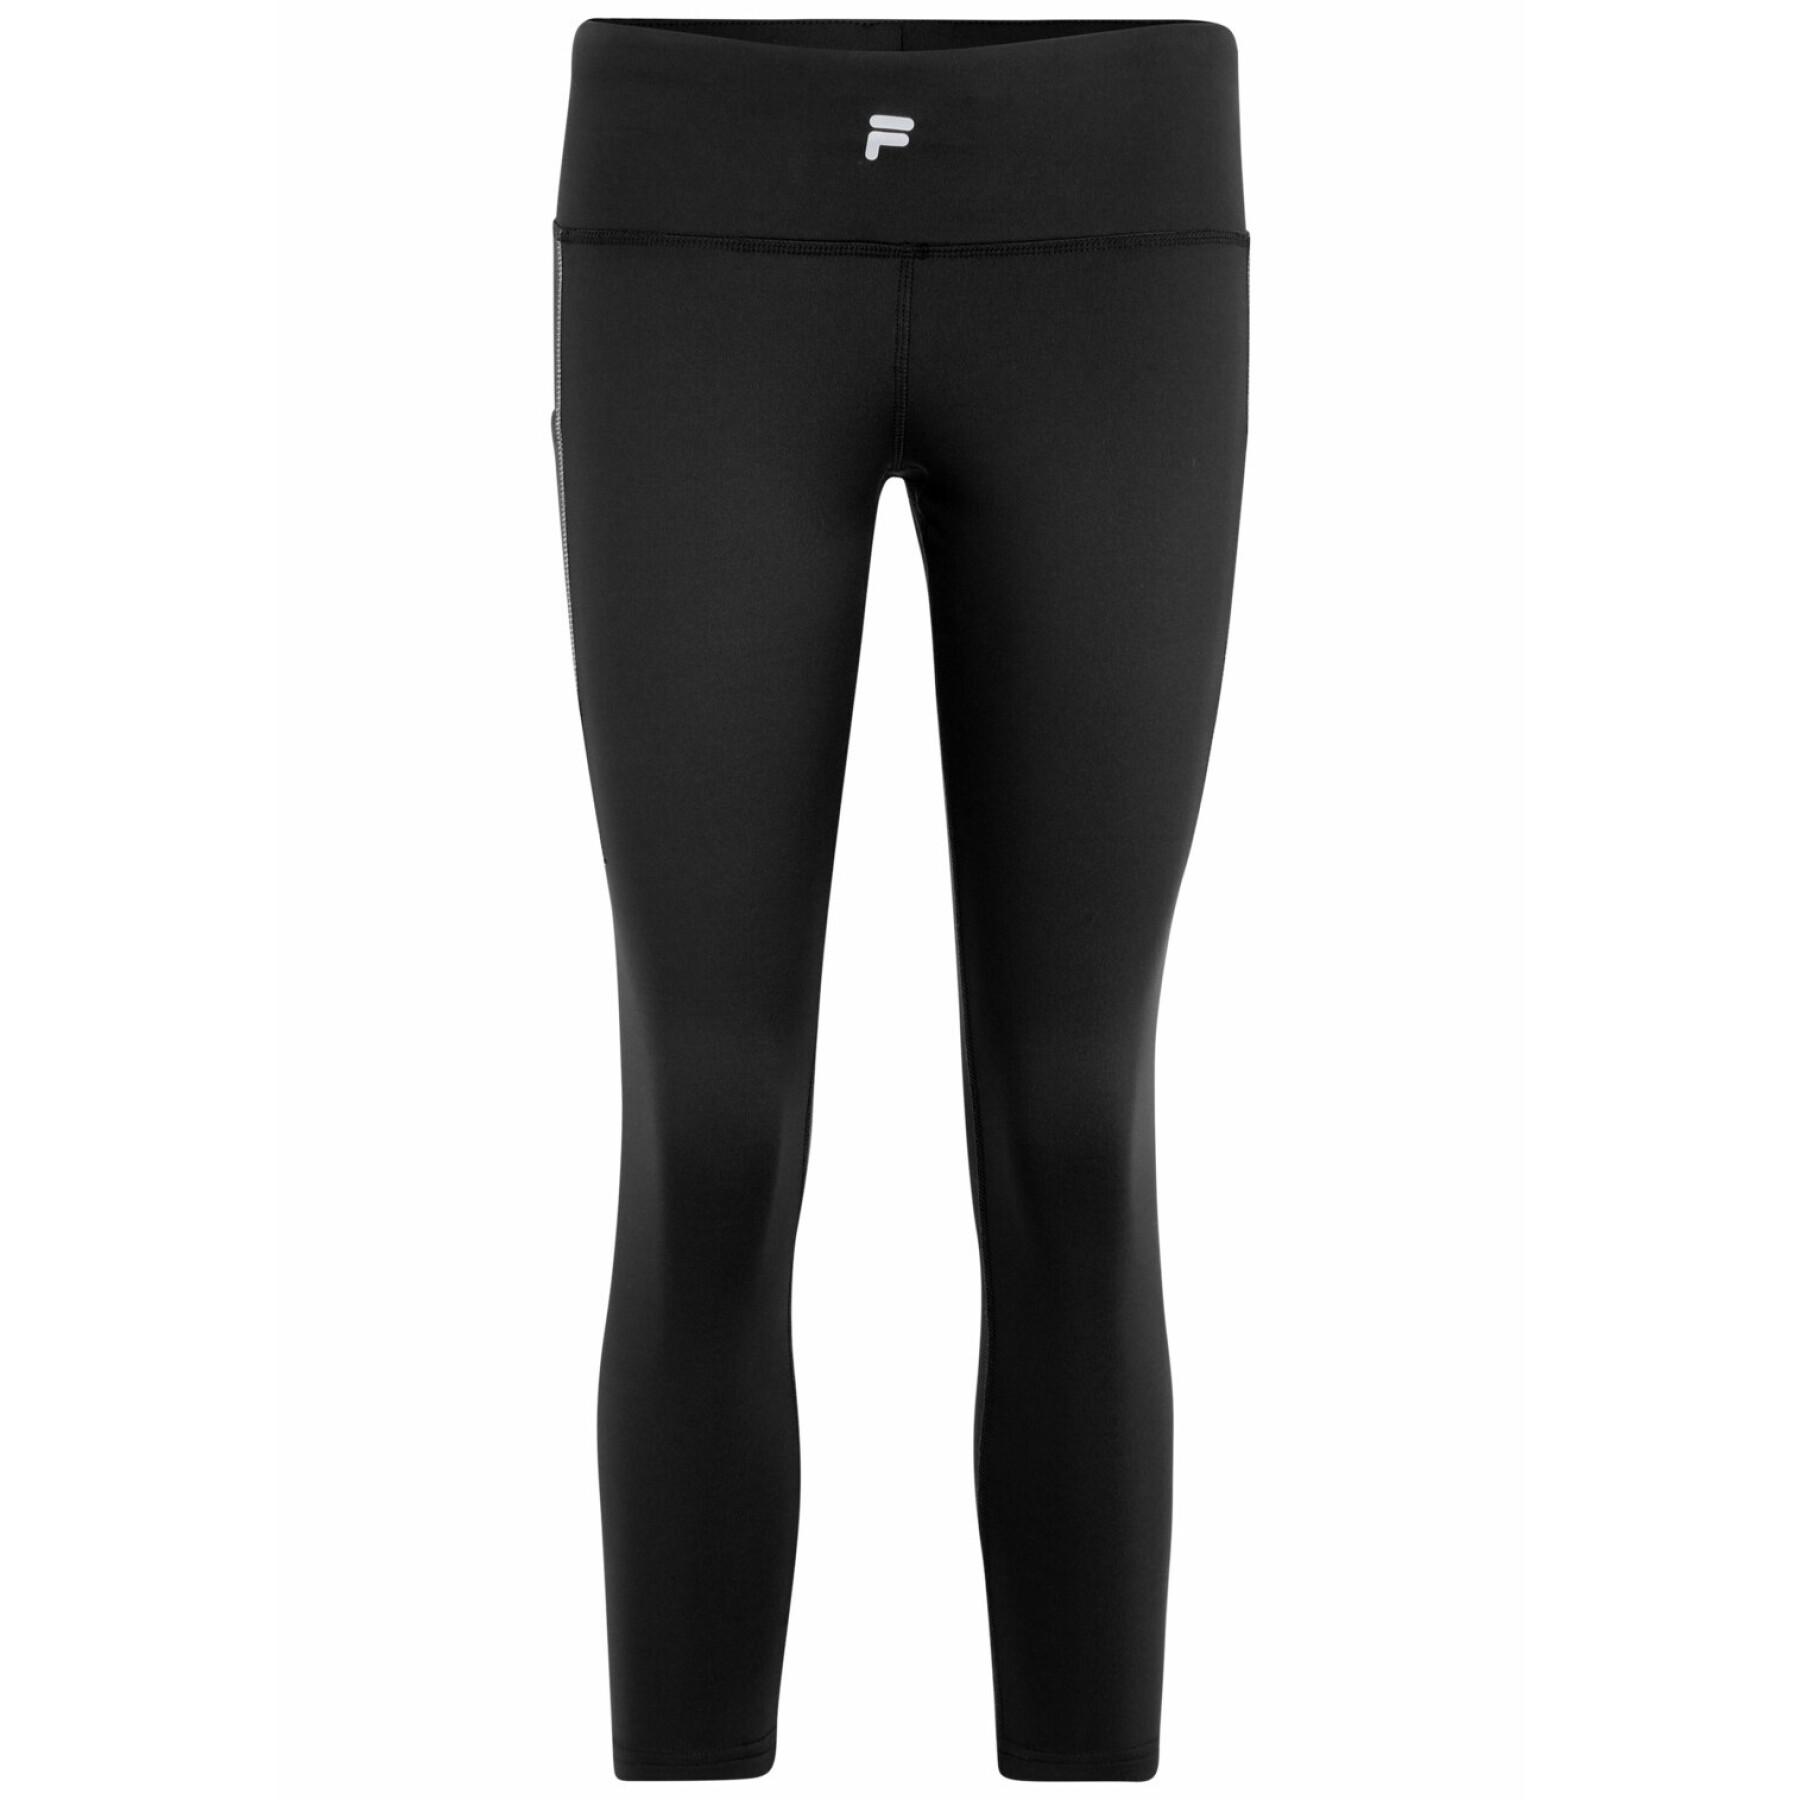 Lifestyle - Women's leggings Fila Rockledge Running - Brands